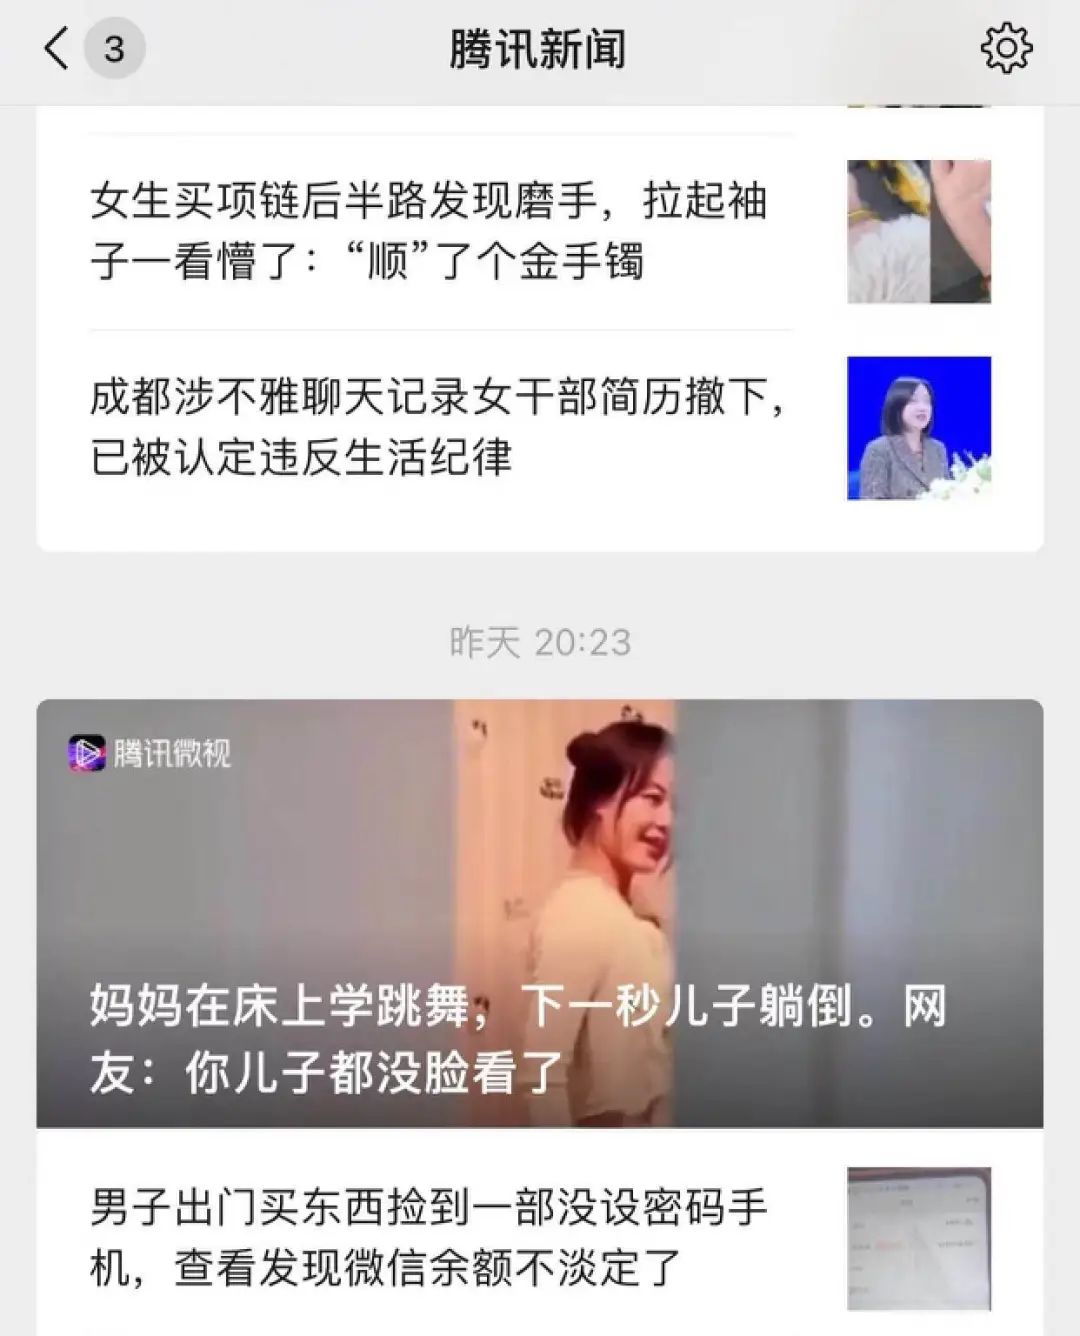 算法正在谋杀新闻，十亿中国网友却为此狂欢。